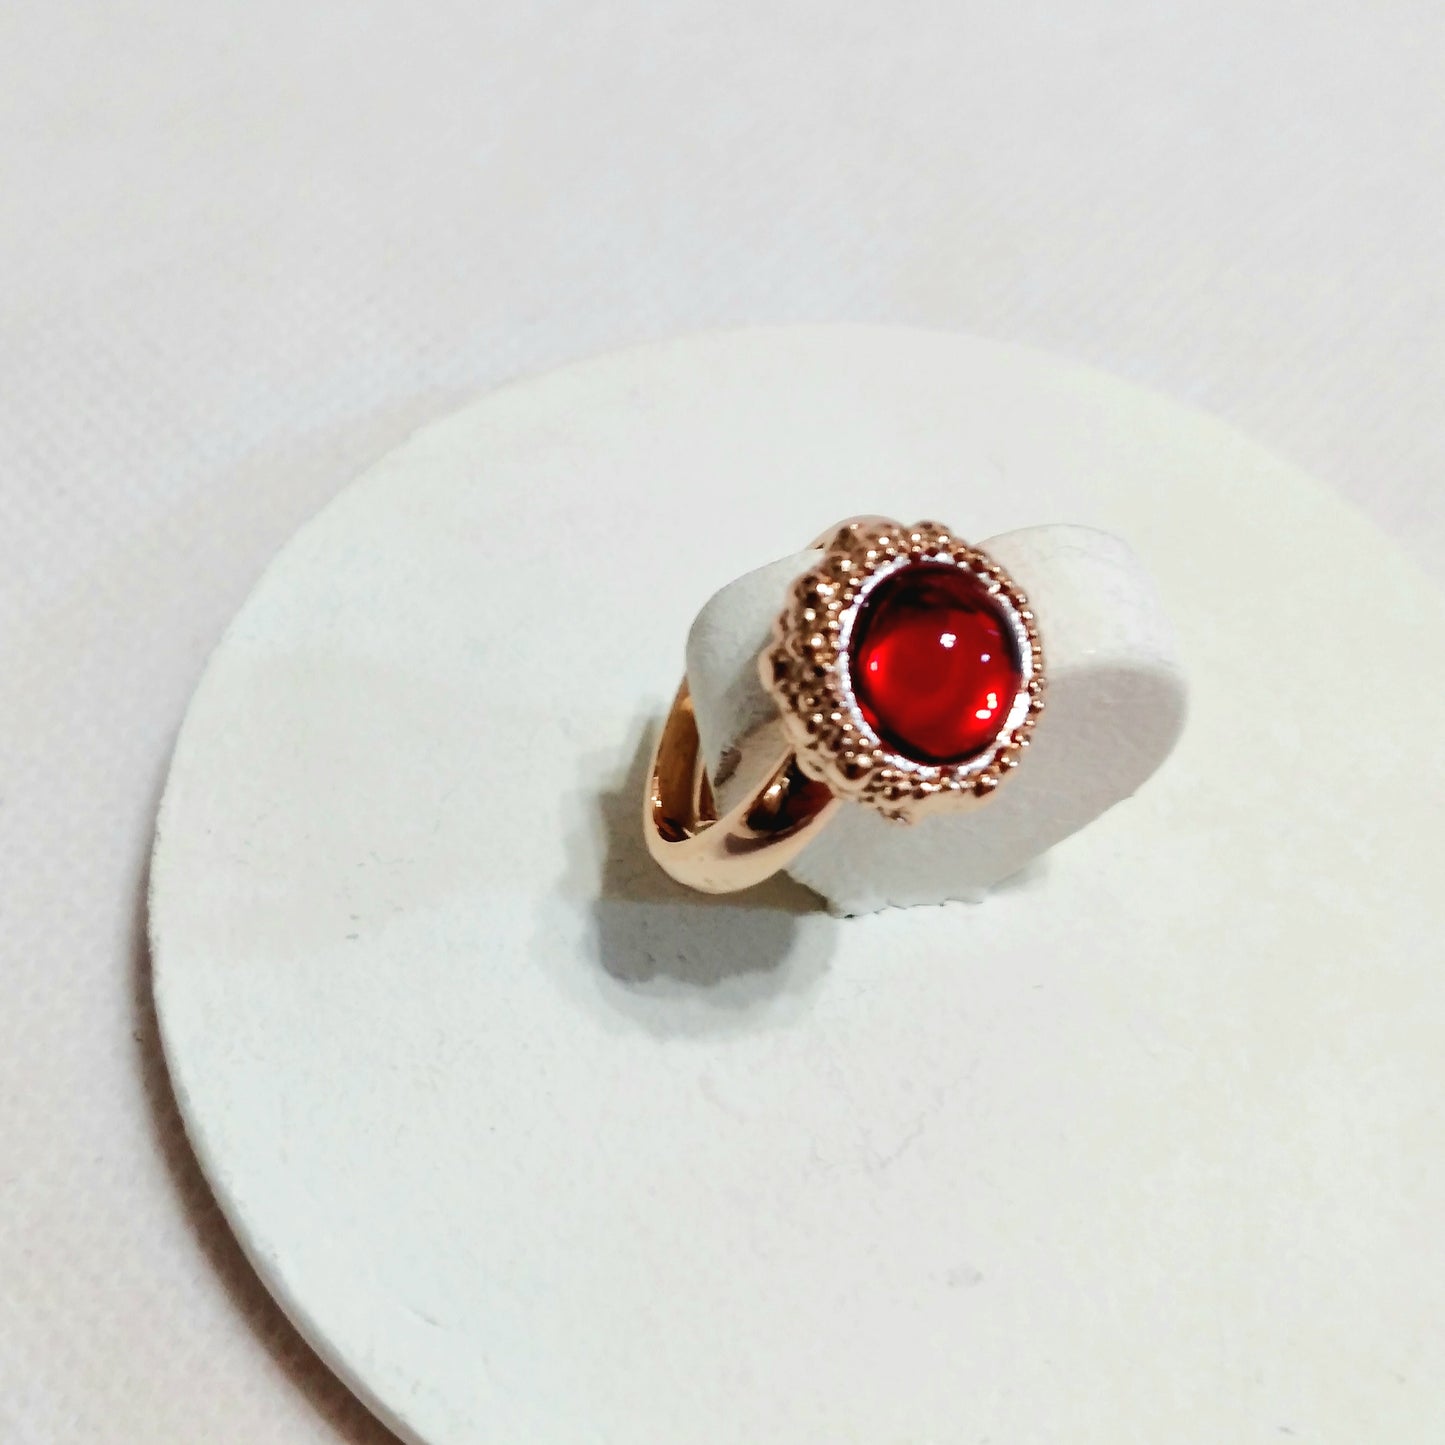 Σετ Κολιέ & Δαχτυλίδι Ροζ/Χρυσό με Κόκκινη Πέτρα